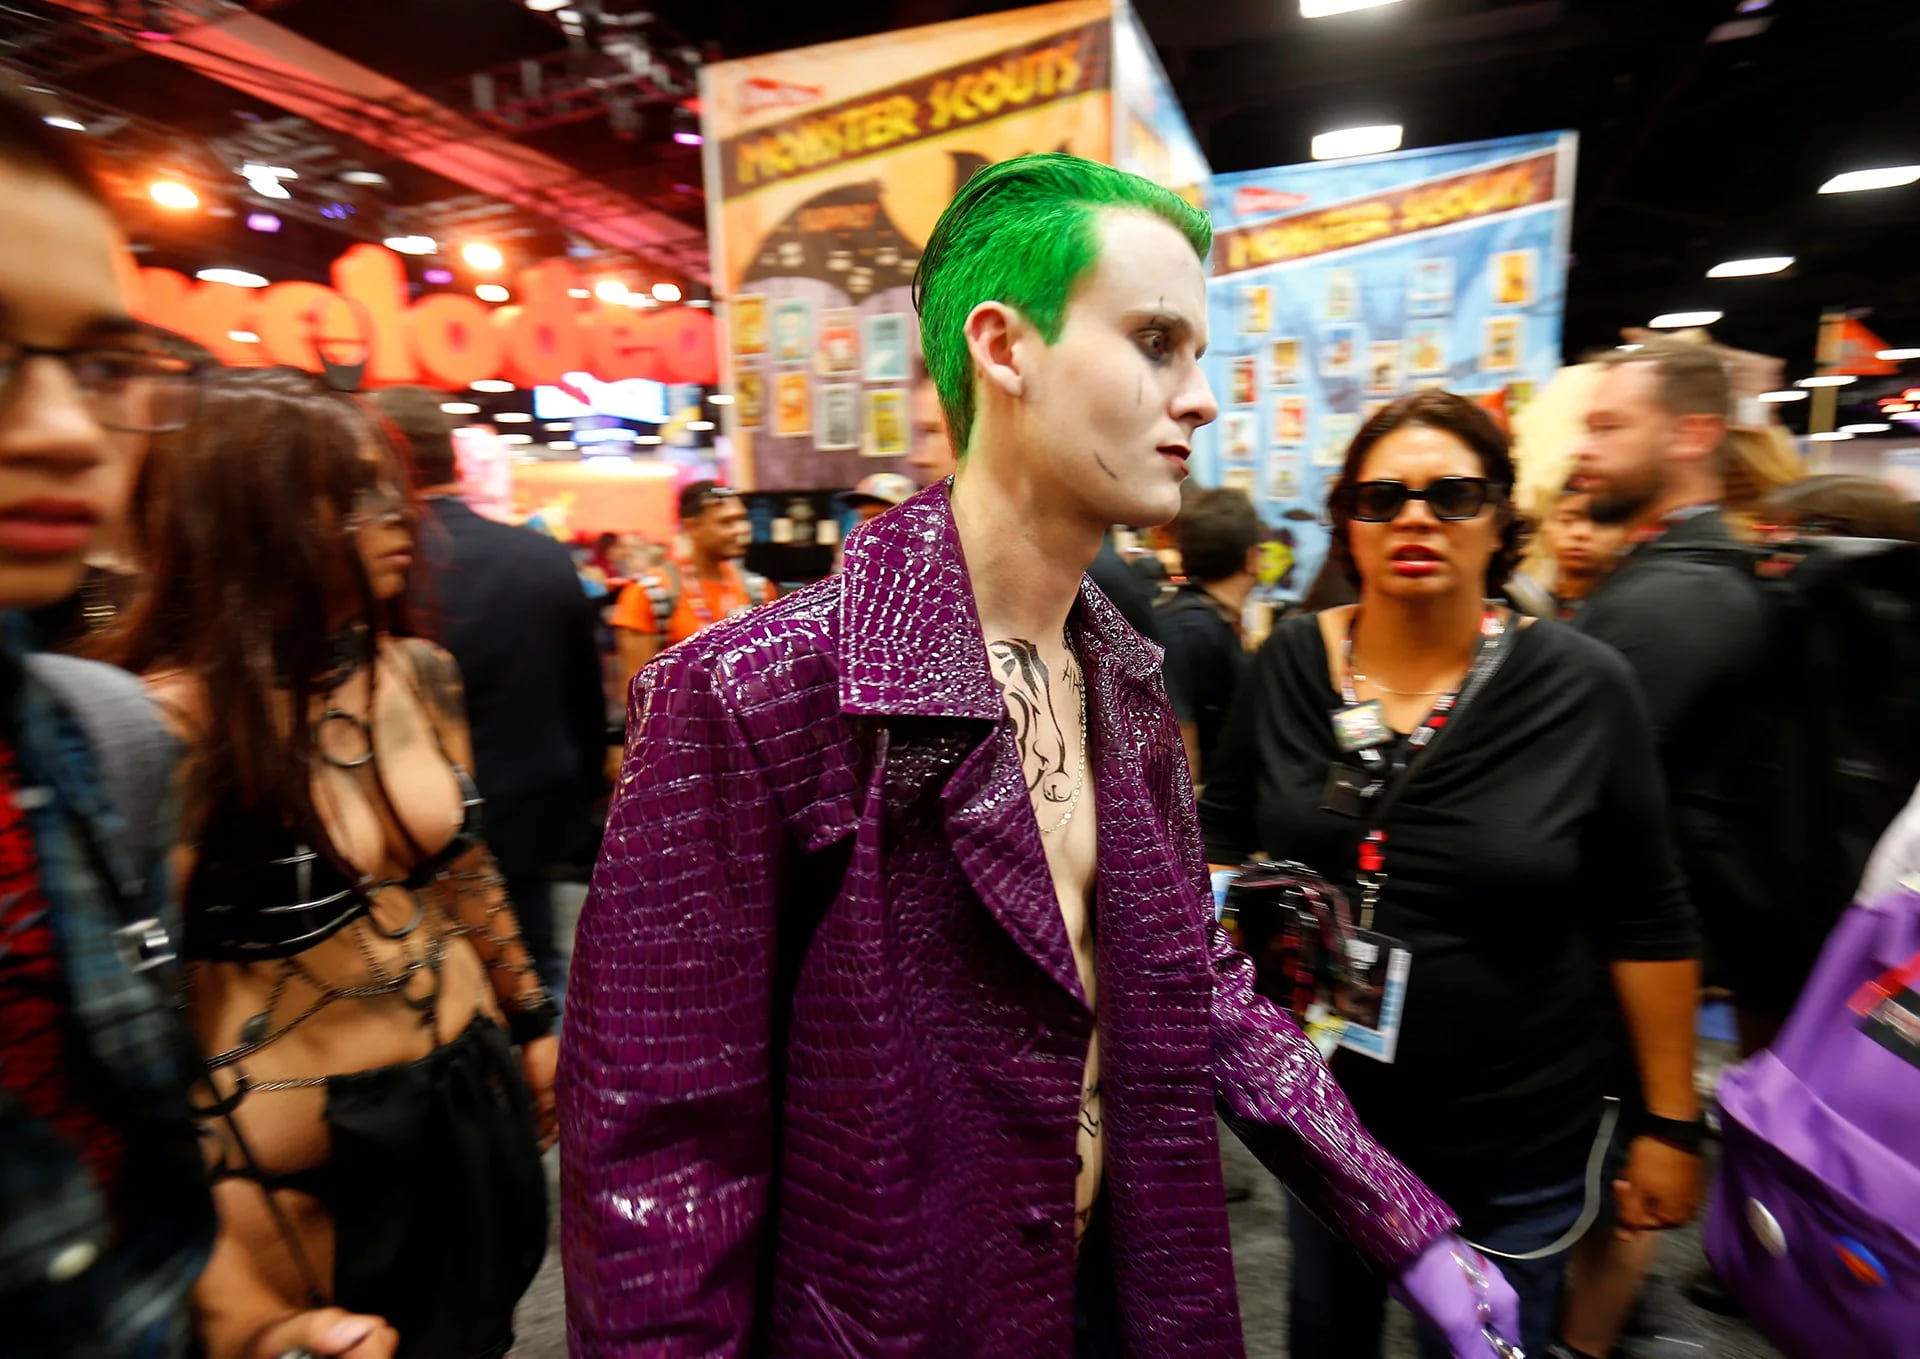 Algunos de los disfraces más repetidos son los de Suicide Squad. Acá el Joker de Jared Leto (Reuters)